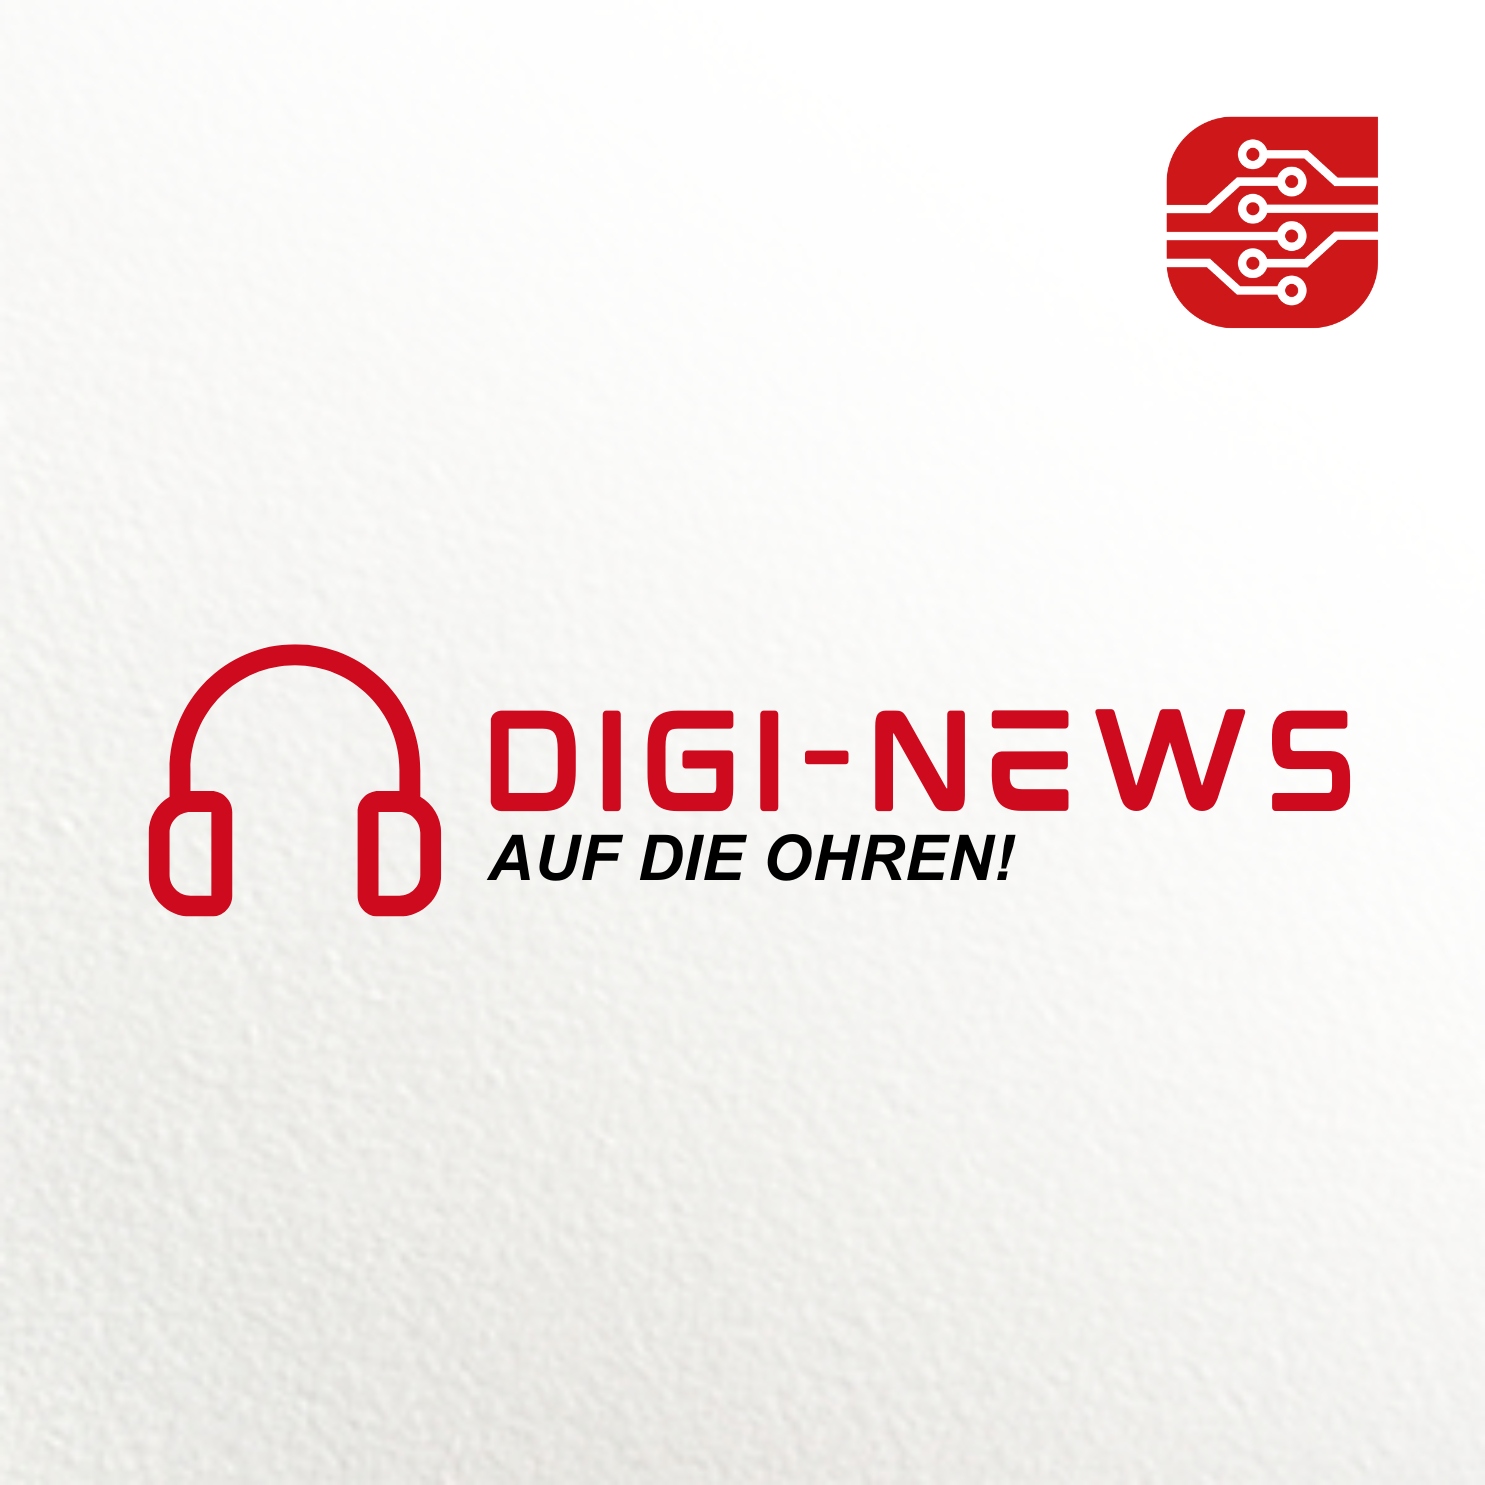 Digi-News auf die Ohren!